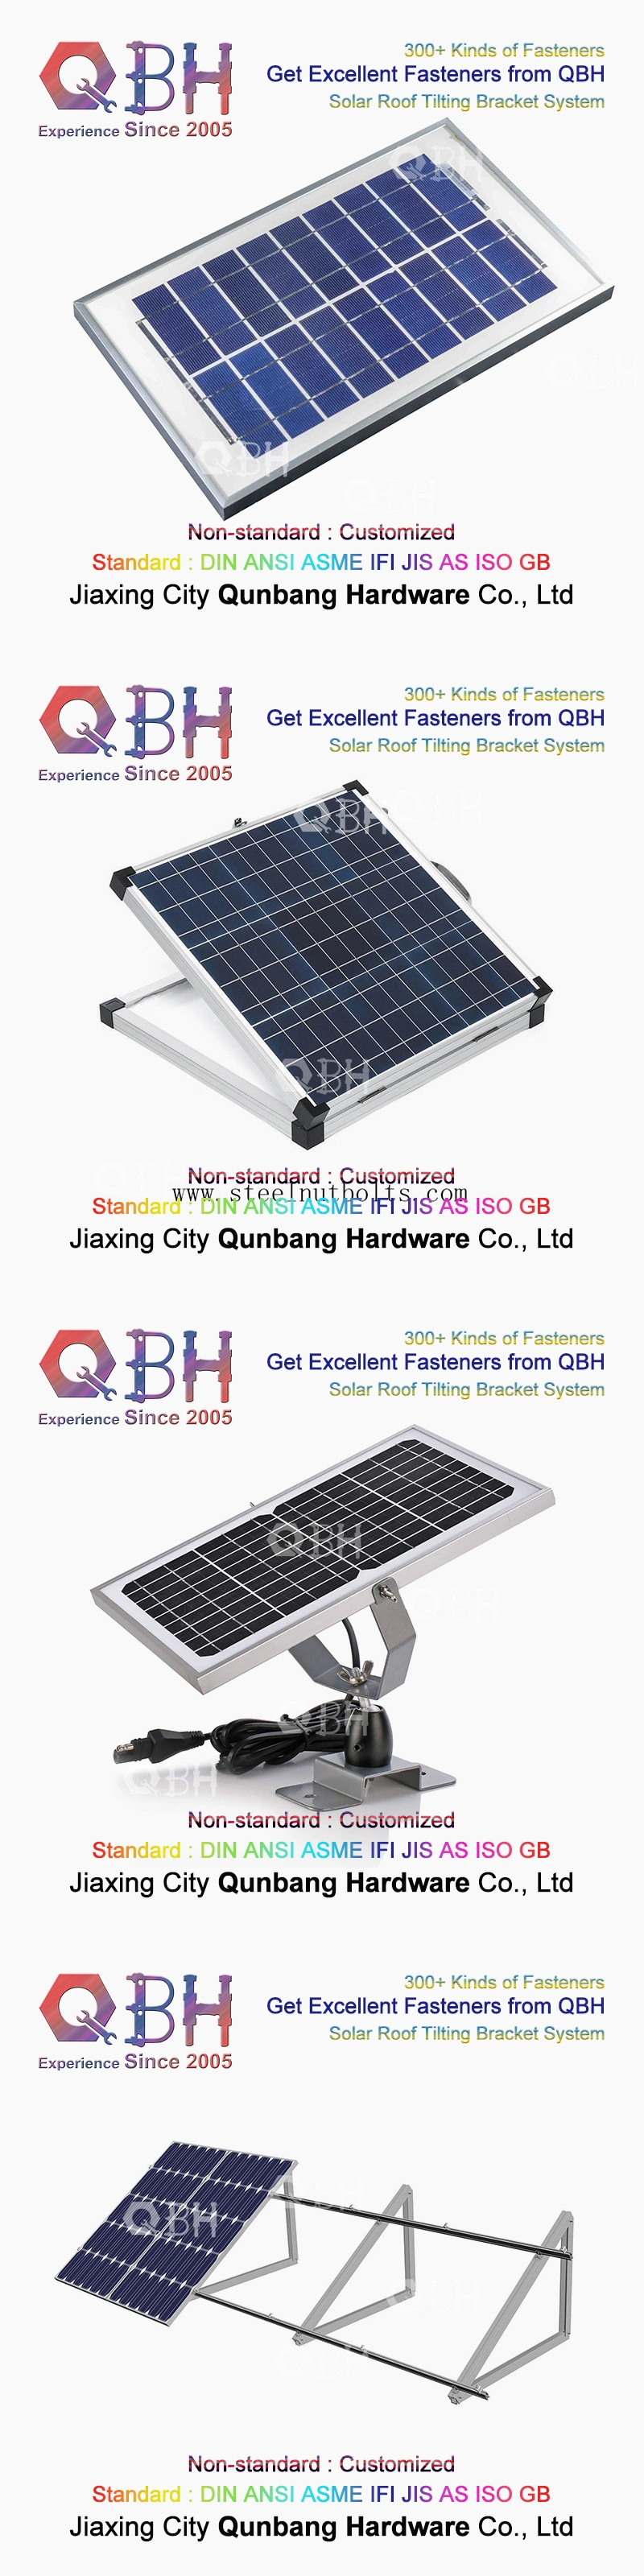 Qbh подгоняло гражданский коммерчески промышленный системный объект энергии солнечной энергии настилая крышу крыша склоняя опрокидывающ стойку шкафа кронштейна для фотовольтайческой панели PV